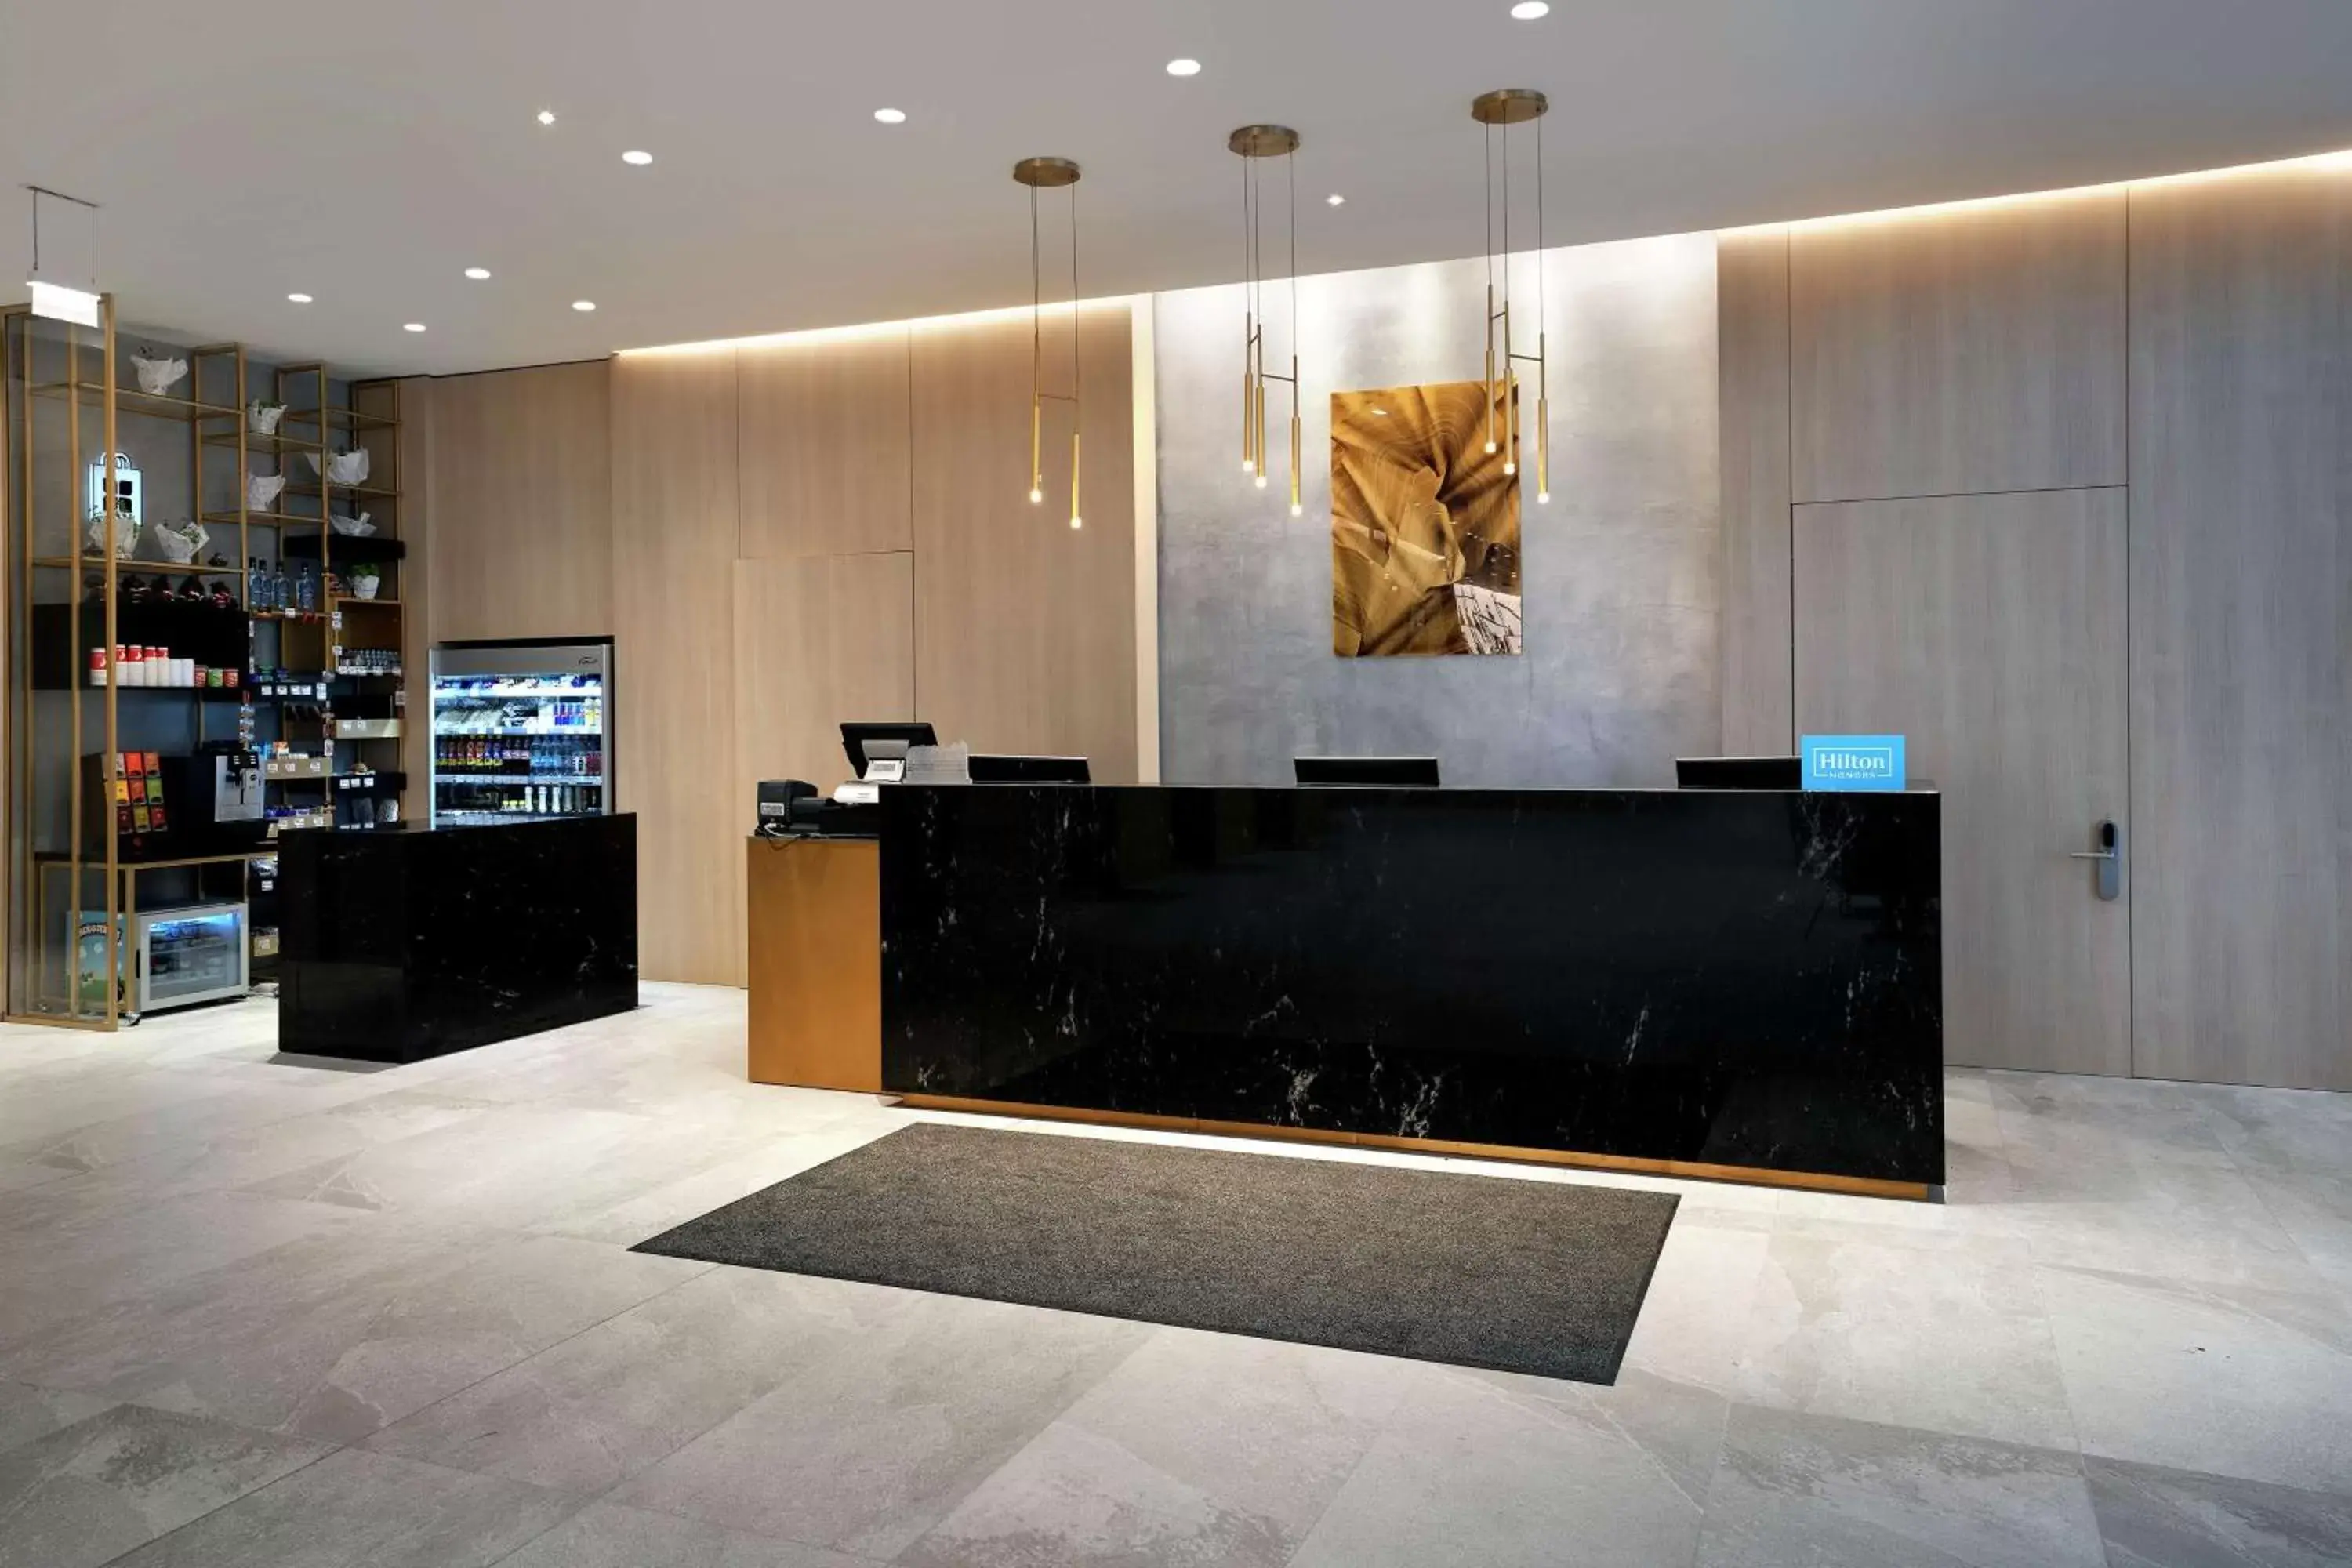 Lobby or reception, Lobby/Reception in Hilton Garden Inn Budapest City Centre